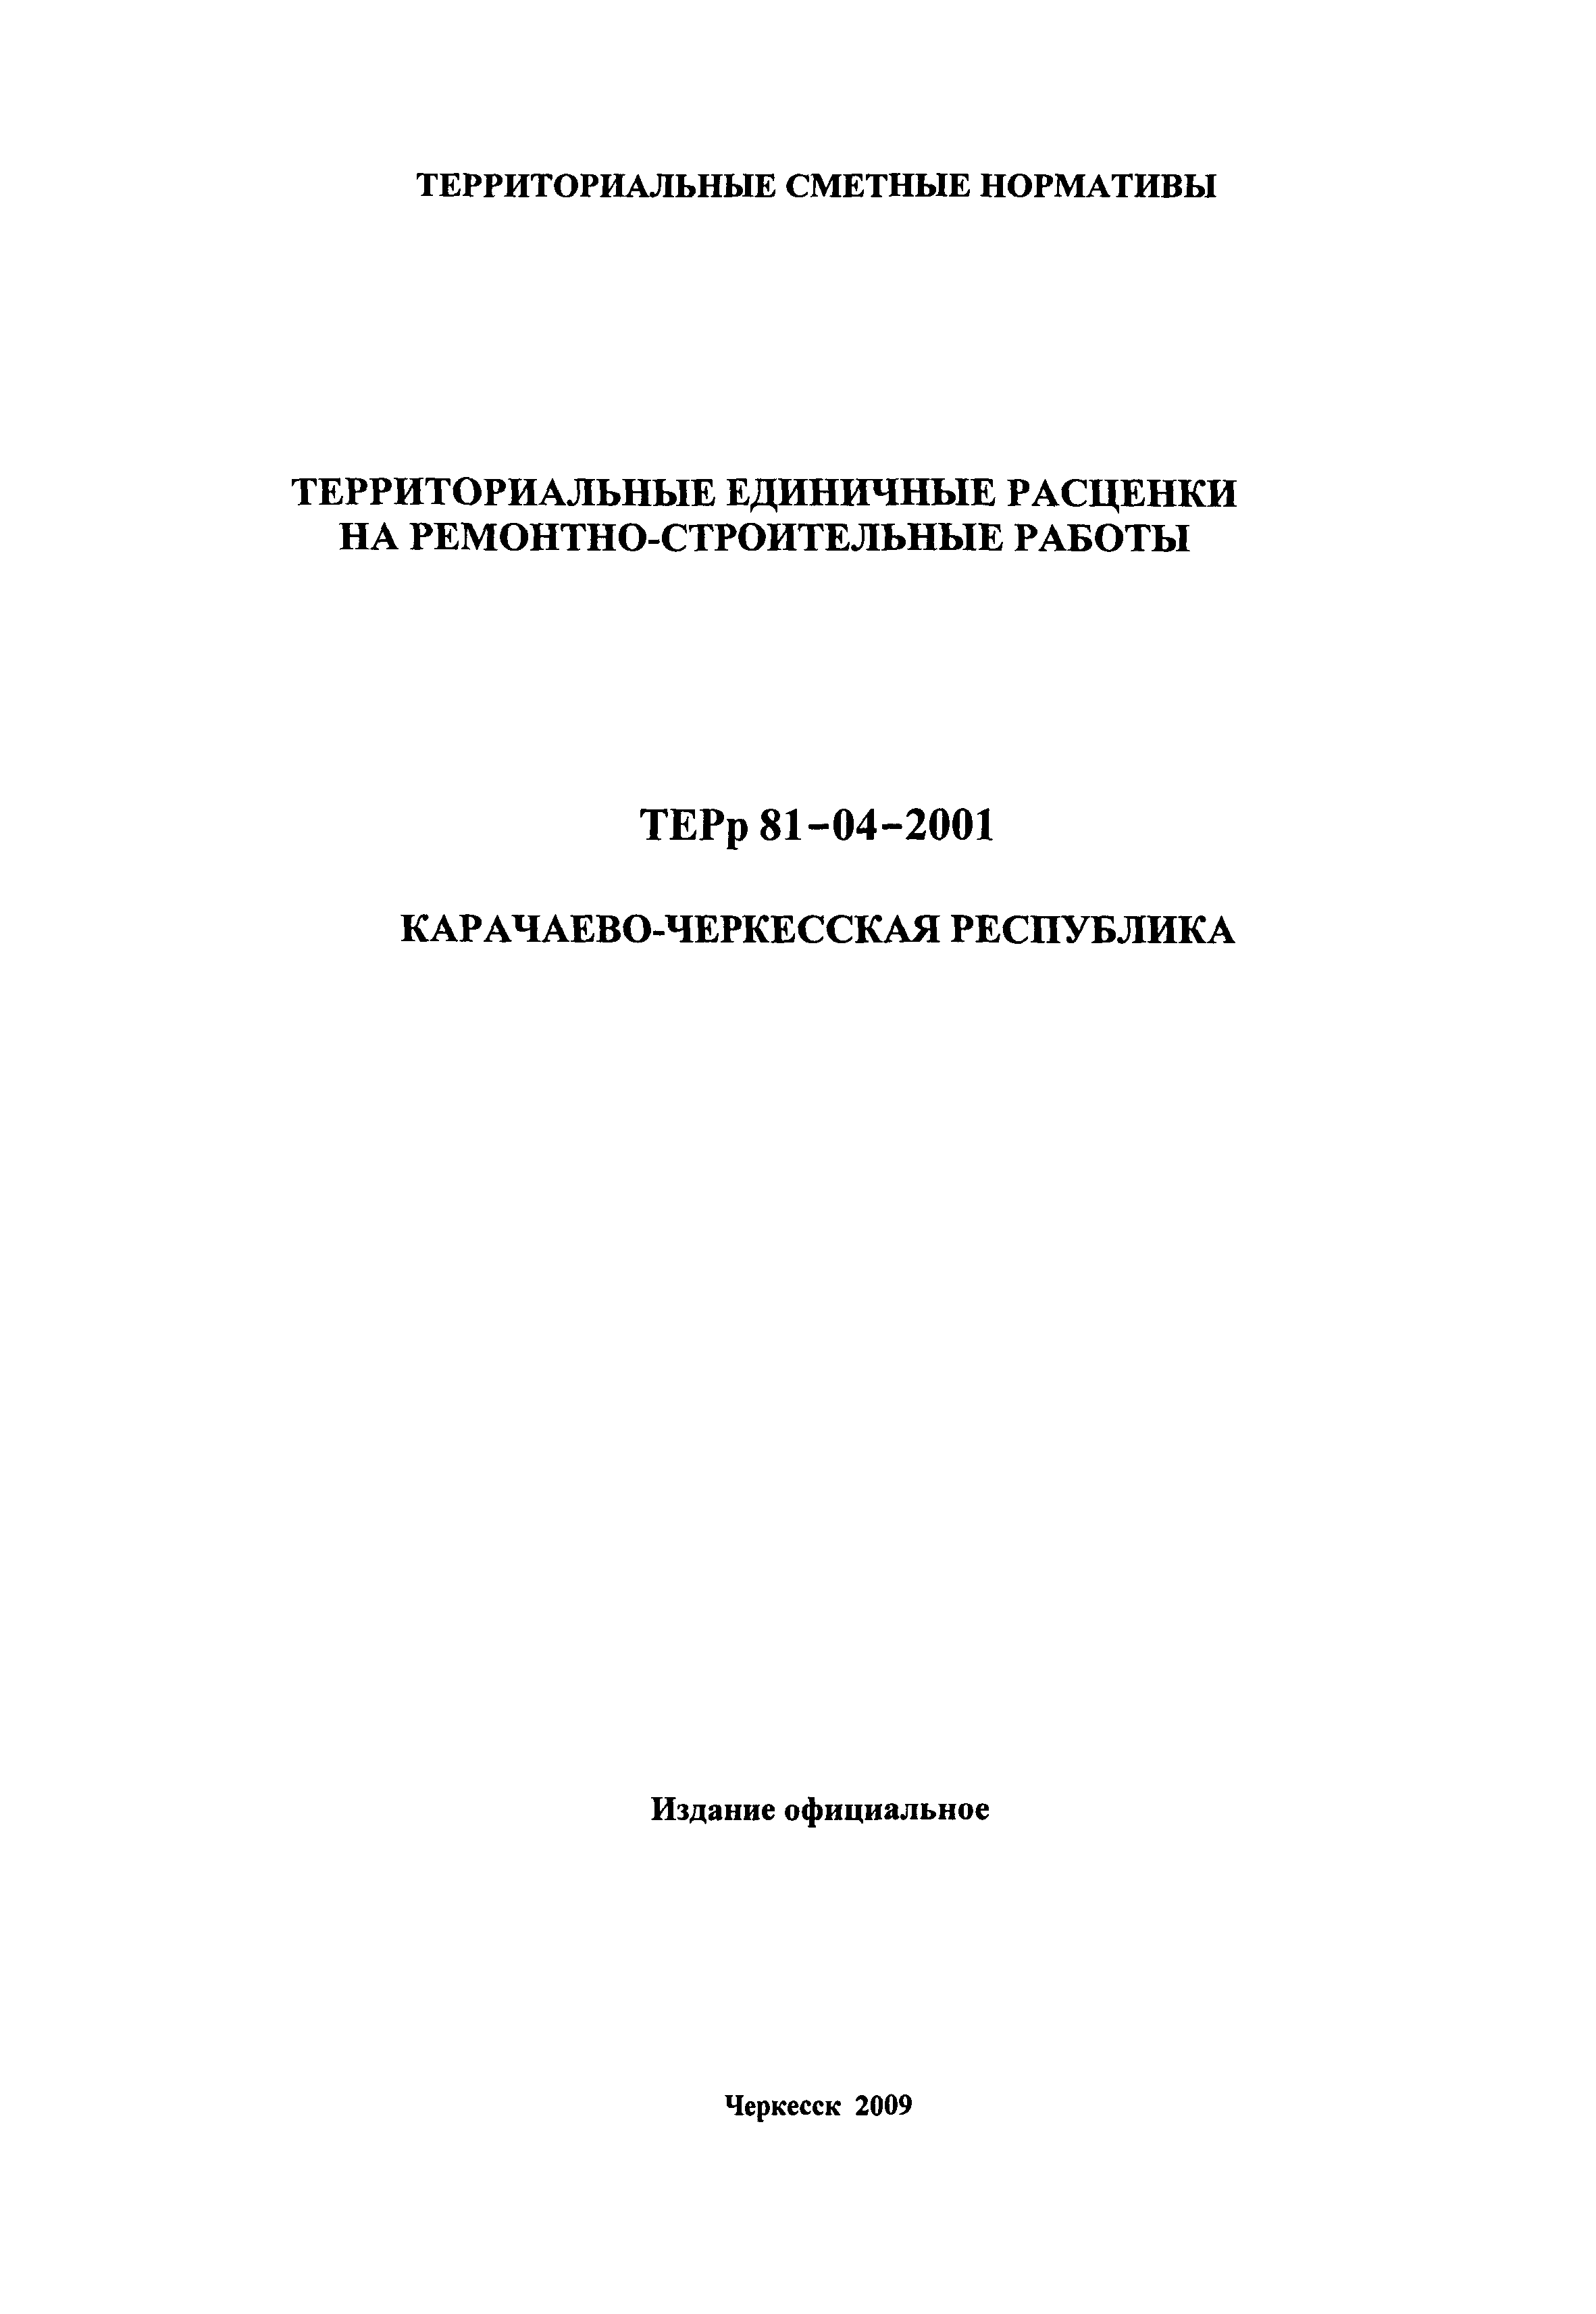 ТЕРр Карачаево-Черкесская Республика 2001-63